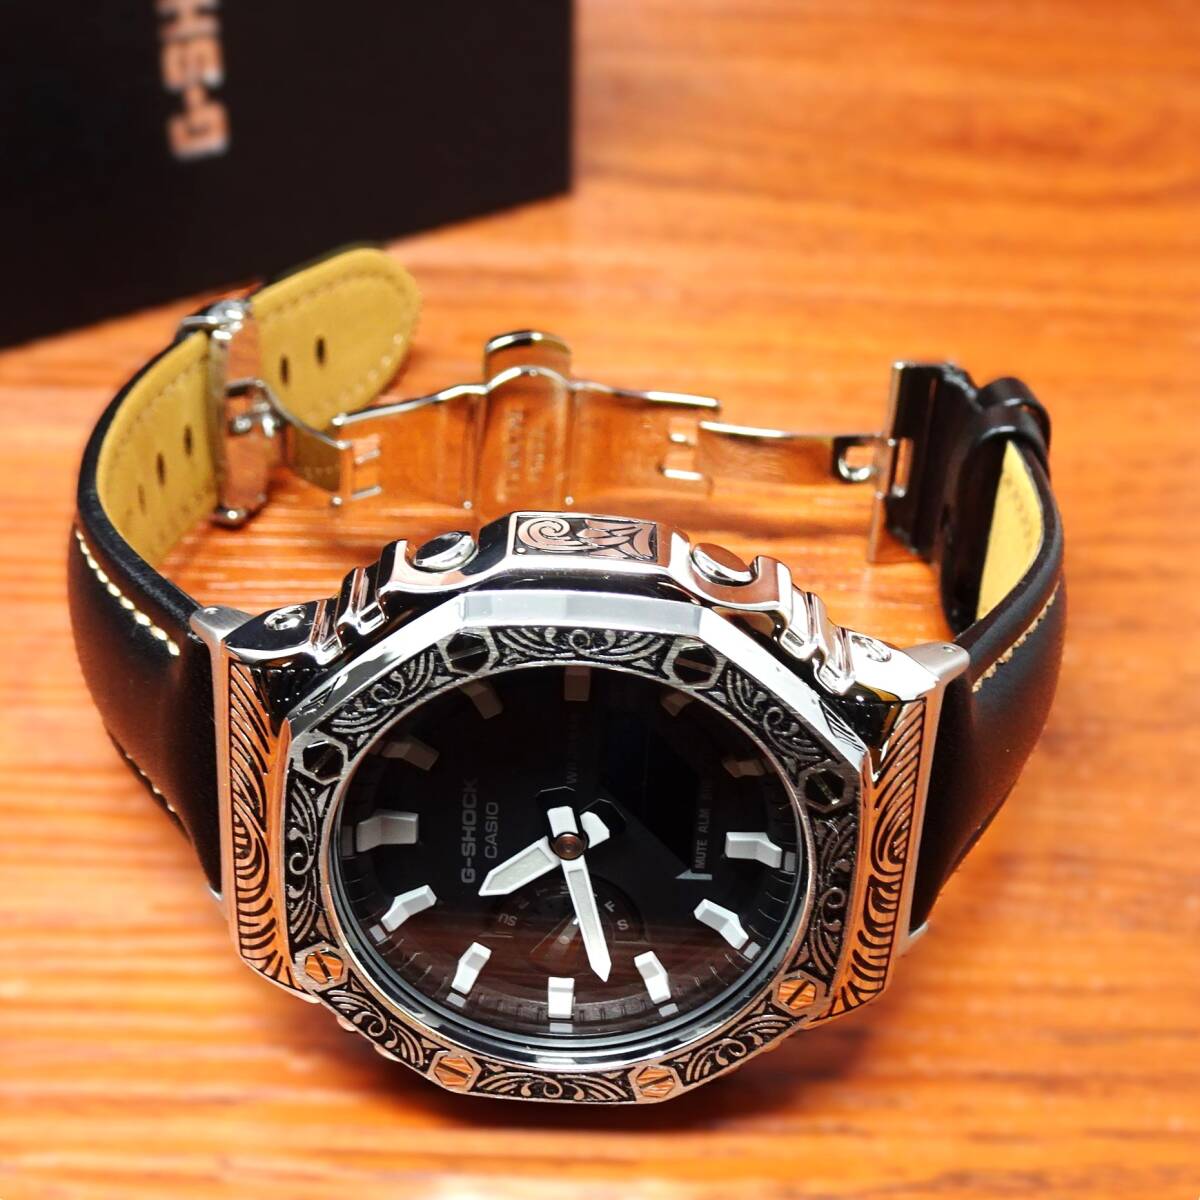 送料無料・新品・GショックCUSTOM・MADE腕時計本体付GA2100ステンレス製ベネチアン柄エンボス加工ベゼル・本革レザーストラップベルト 